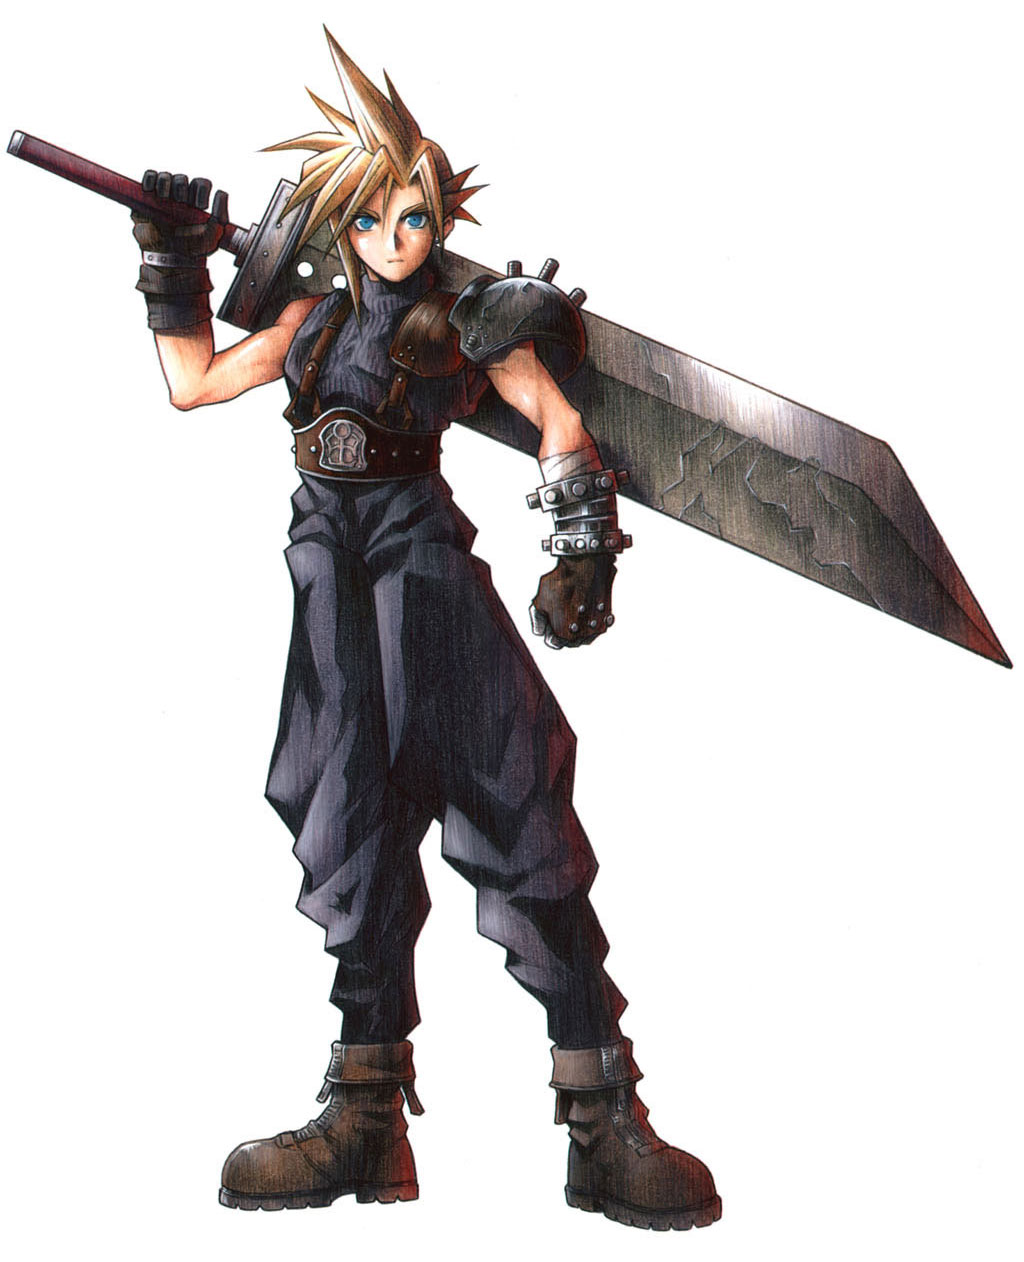 Cloud Strife - nhân vật chính của Final Fantasy - sẽ mang đến cho bạn một cuộc phiêu lưu đầy kịch tính và đầy cảm xúc. Với các kỹ năng chiến đấu điêu luyện và một tính cách đặc biệt, Cloud chắc chắn sẽ khiến bạn say mê.